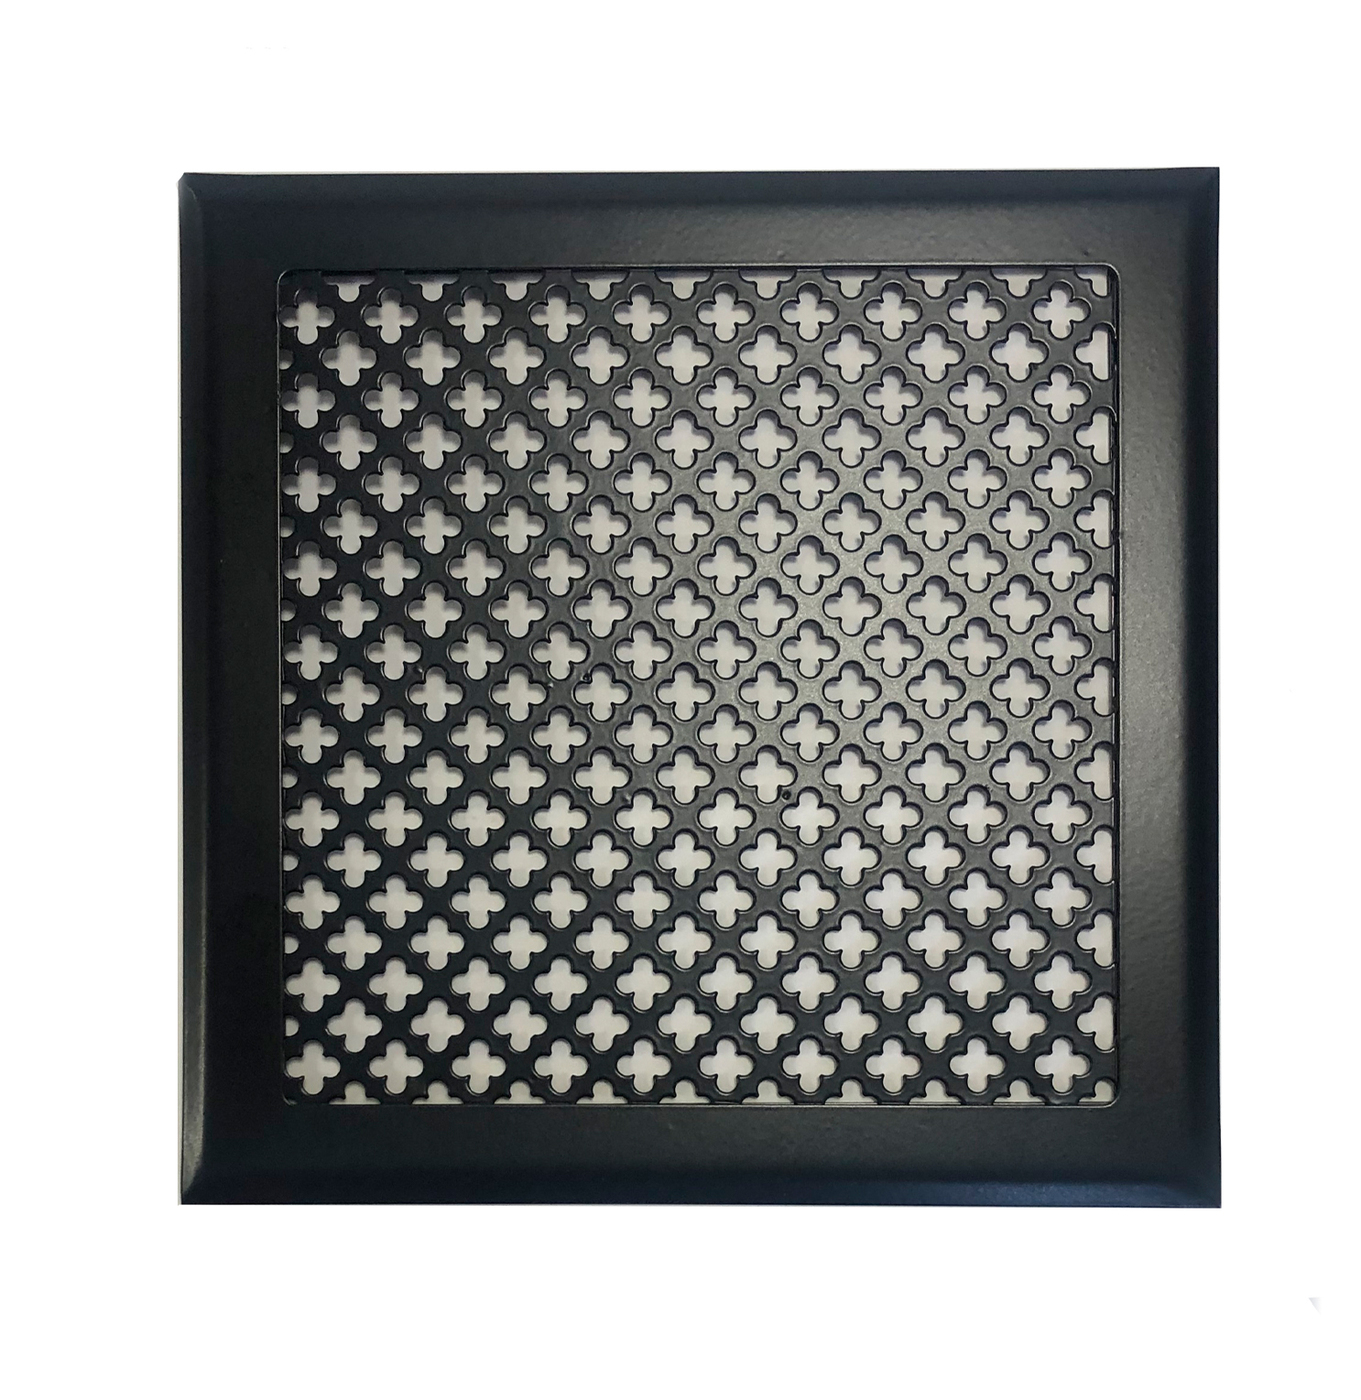 Вентиляционная решетка металлическая на магнитах 200х200 мм, цветок, чёрная матовая.